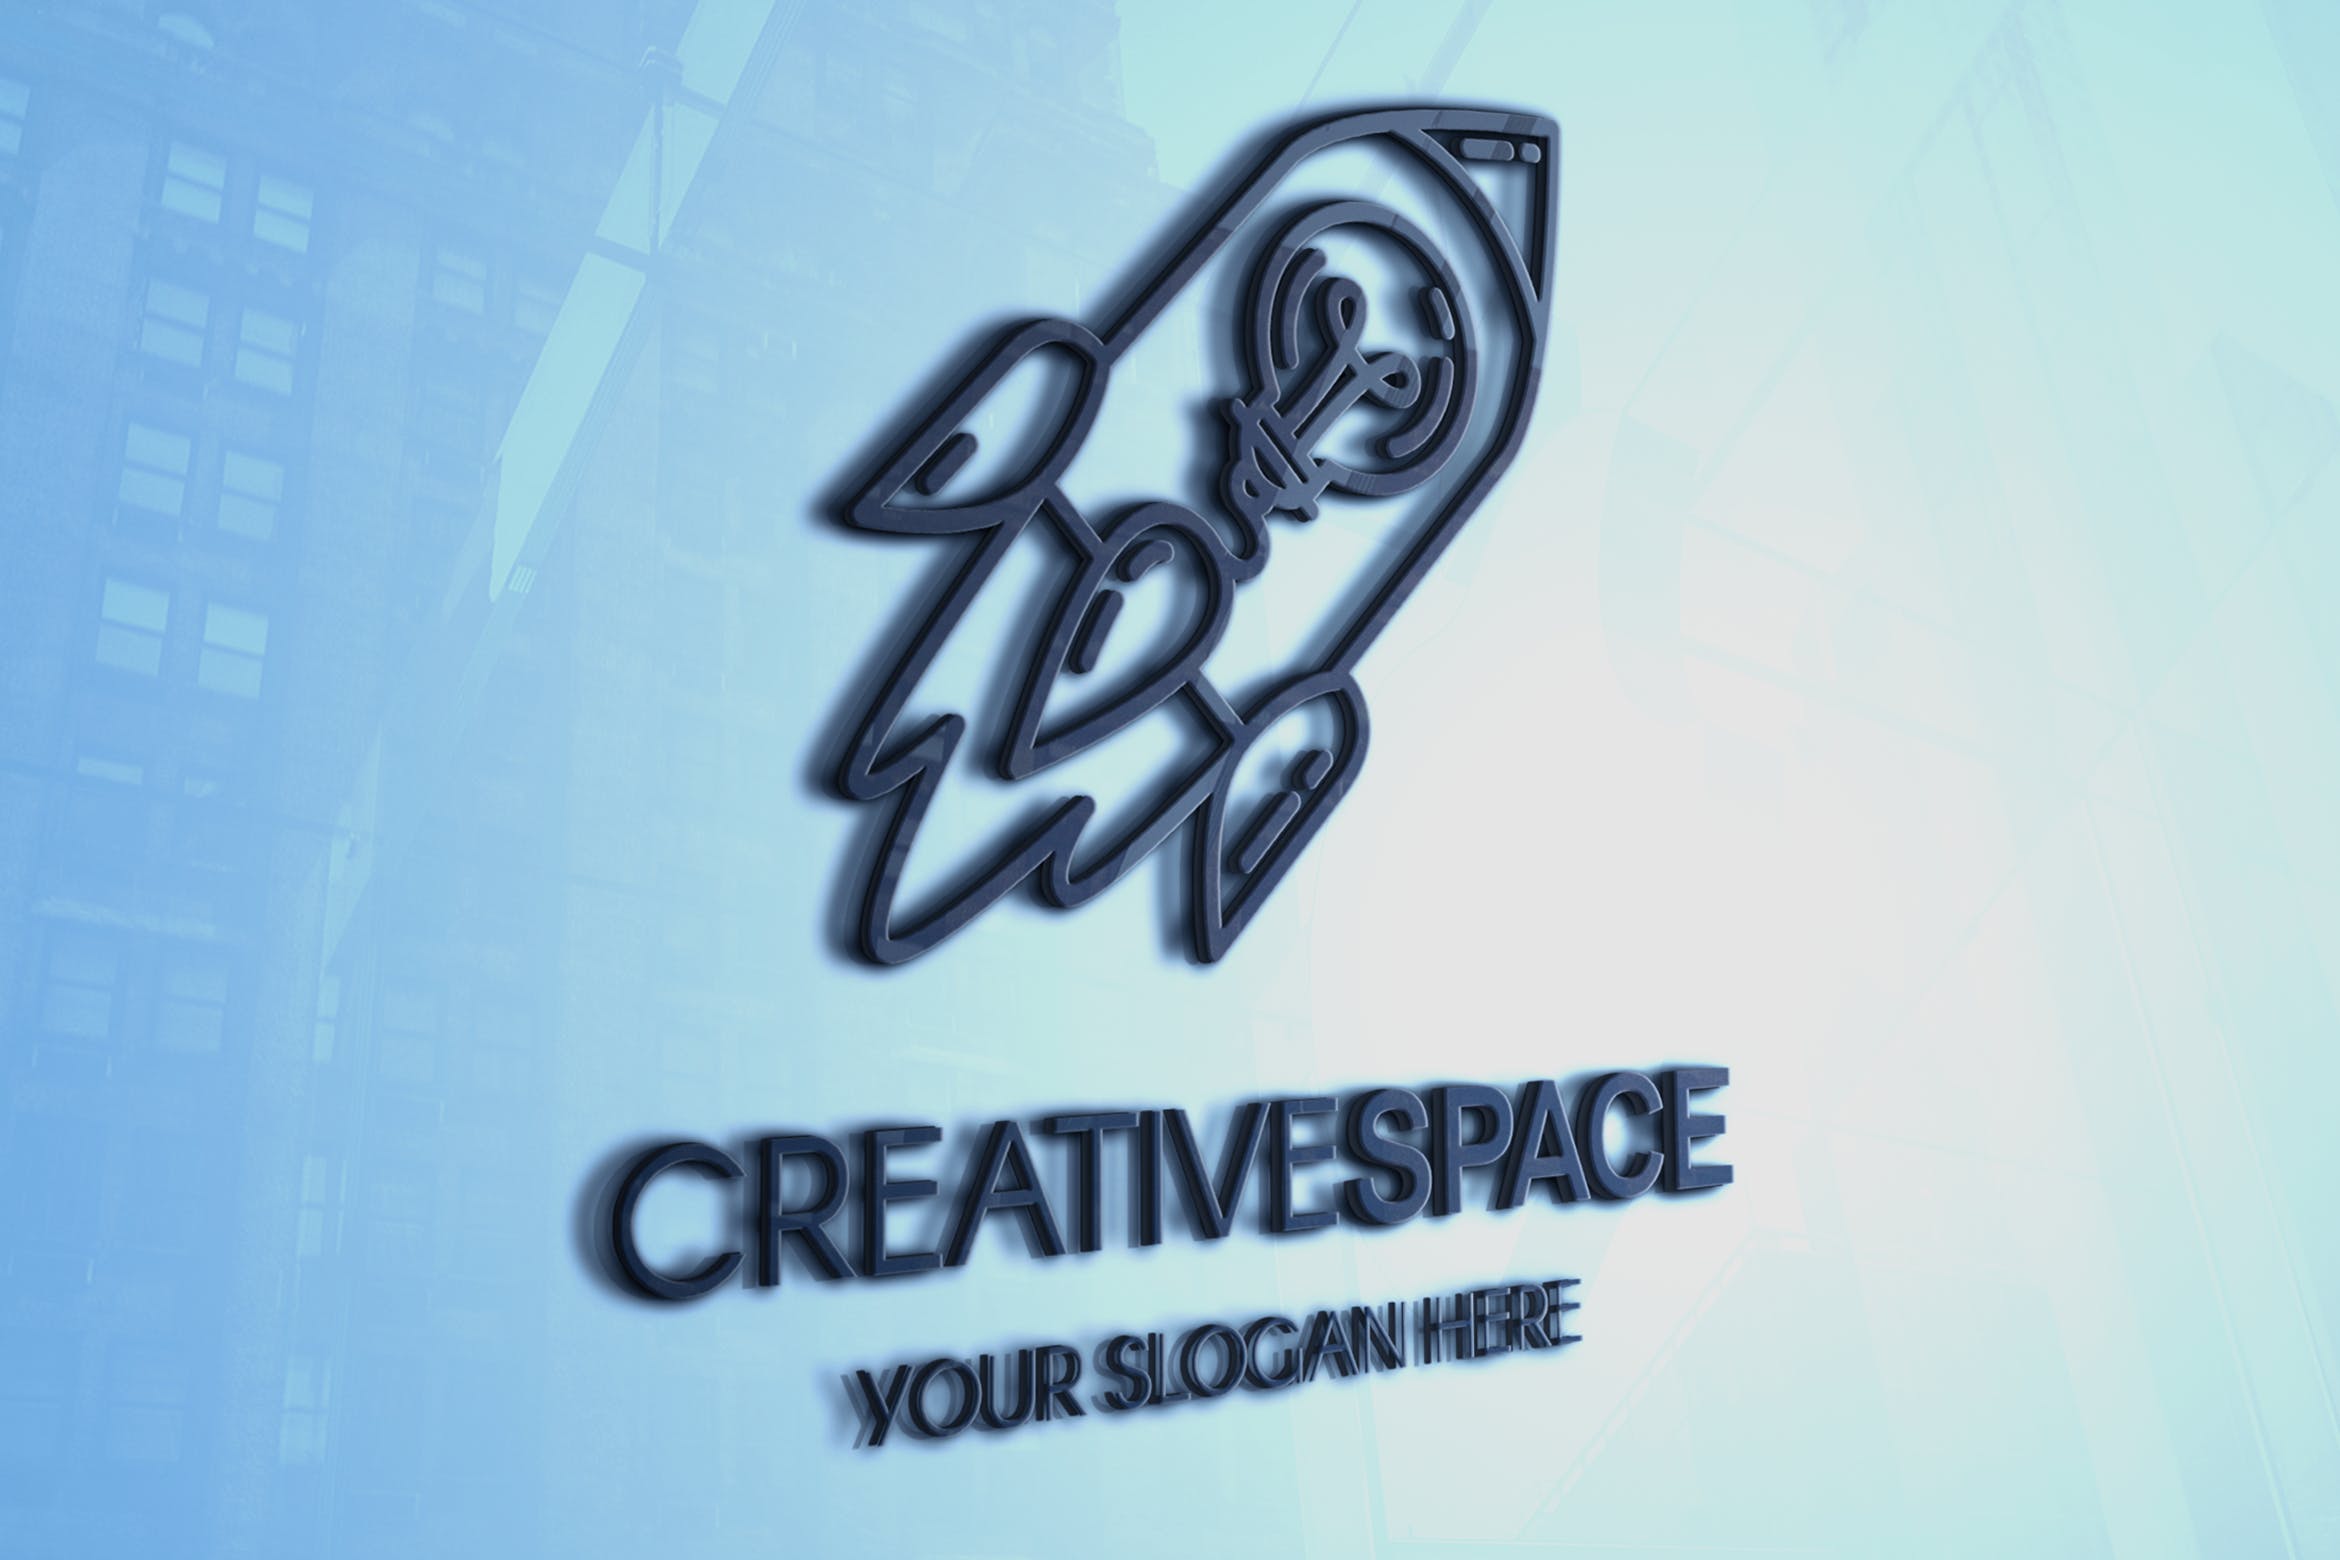 创意高科技公司火箭图形Logo设计模板 Creative Idea With Rocket Logo插图